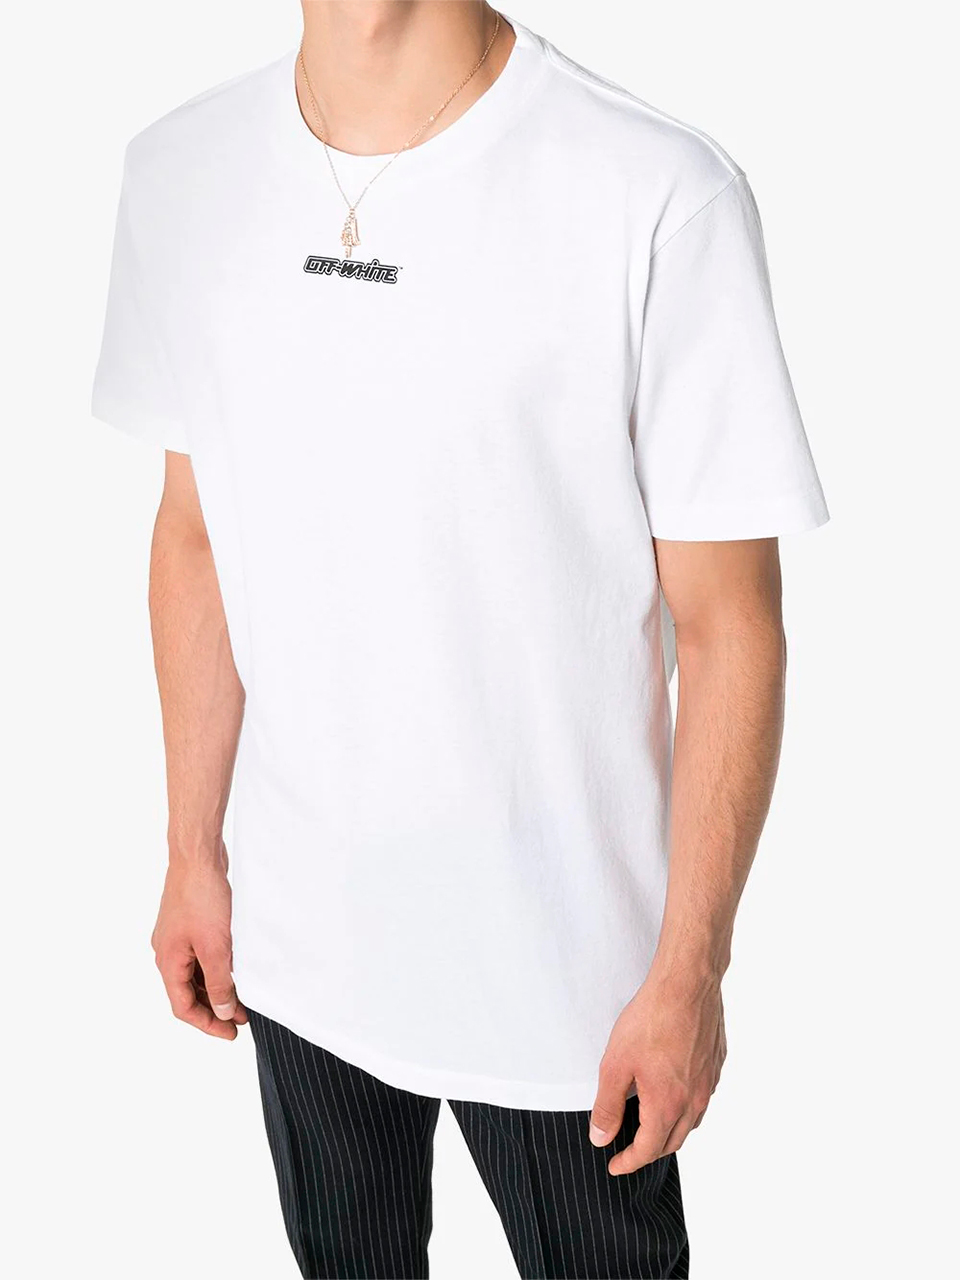 Imagem de: Camiseta Off-White Branca com Estampa Setas Azul